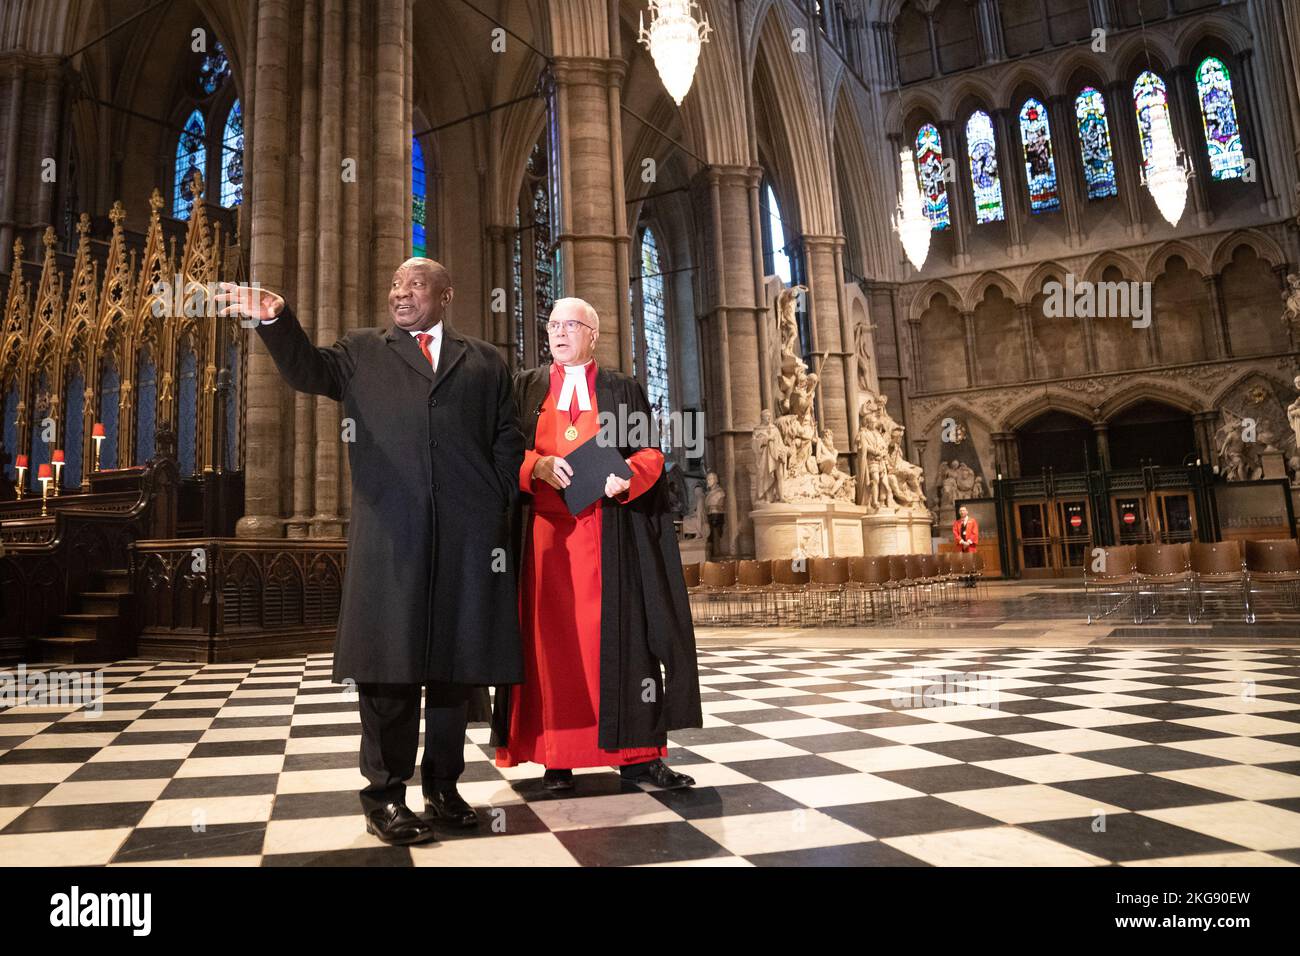 Le président Cyril Ramaphosa, d'Afrique du Sud, visite l'abbaye de Westminster à Londres, accompagné du doyen de l'abbaye de Westminster, le très révérend David Hoyle, dans le cadre de la visite d'État au Royaume-Uni par le président sud-africain. Date de la photo: Mardi 22 novembre 2022. Banque D'Images